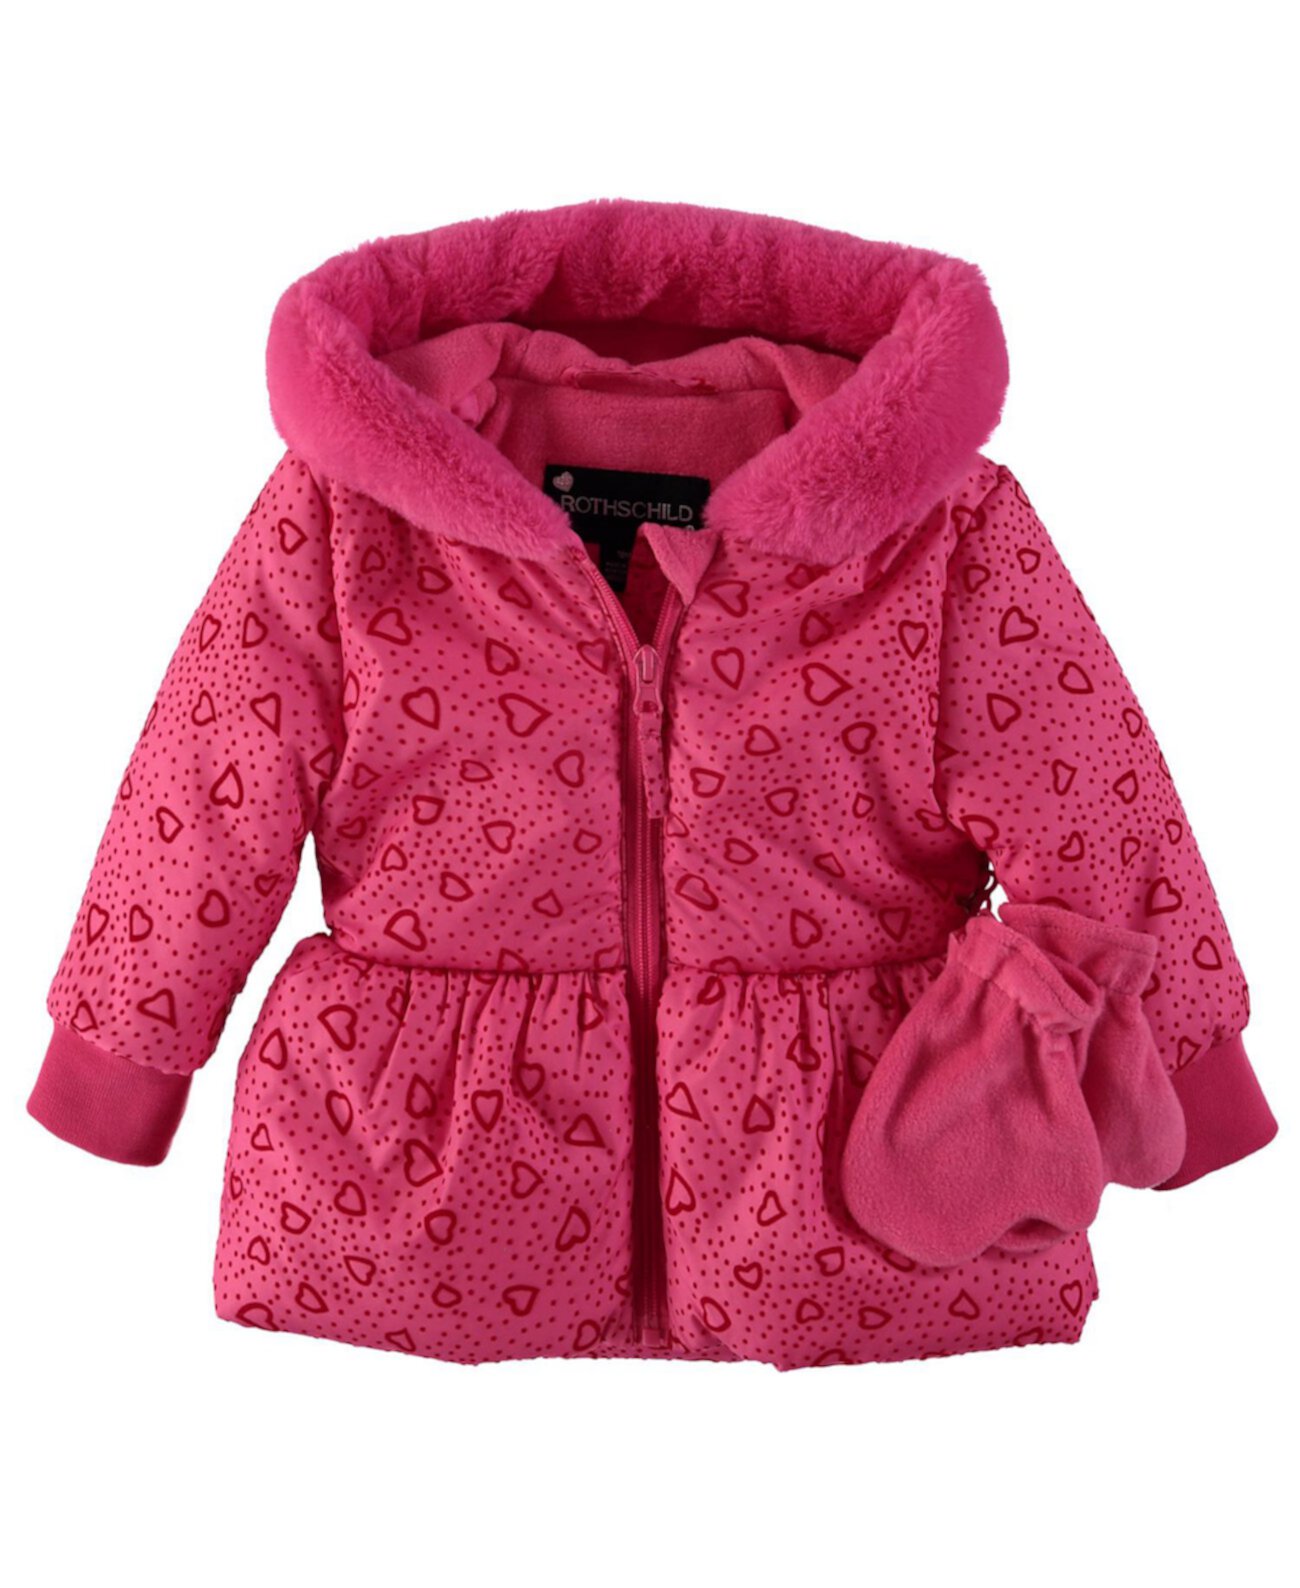 Пальто с пеплумом и варежками в комплекте для девочек младшего возраста S Rothschild & CO S Rothschild & CO